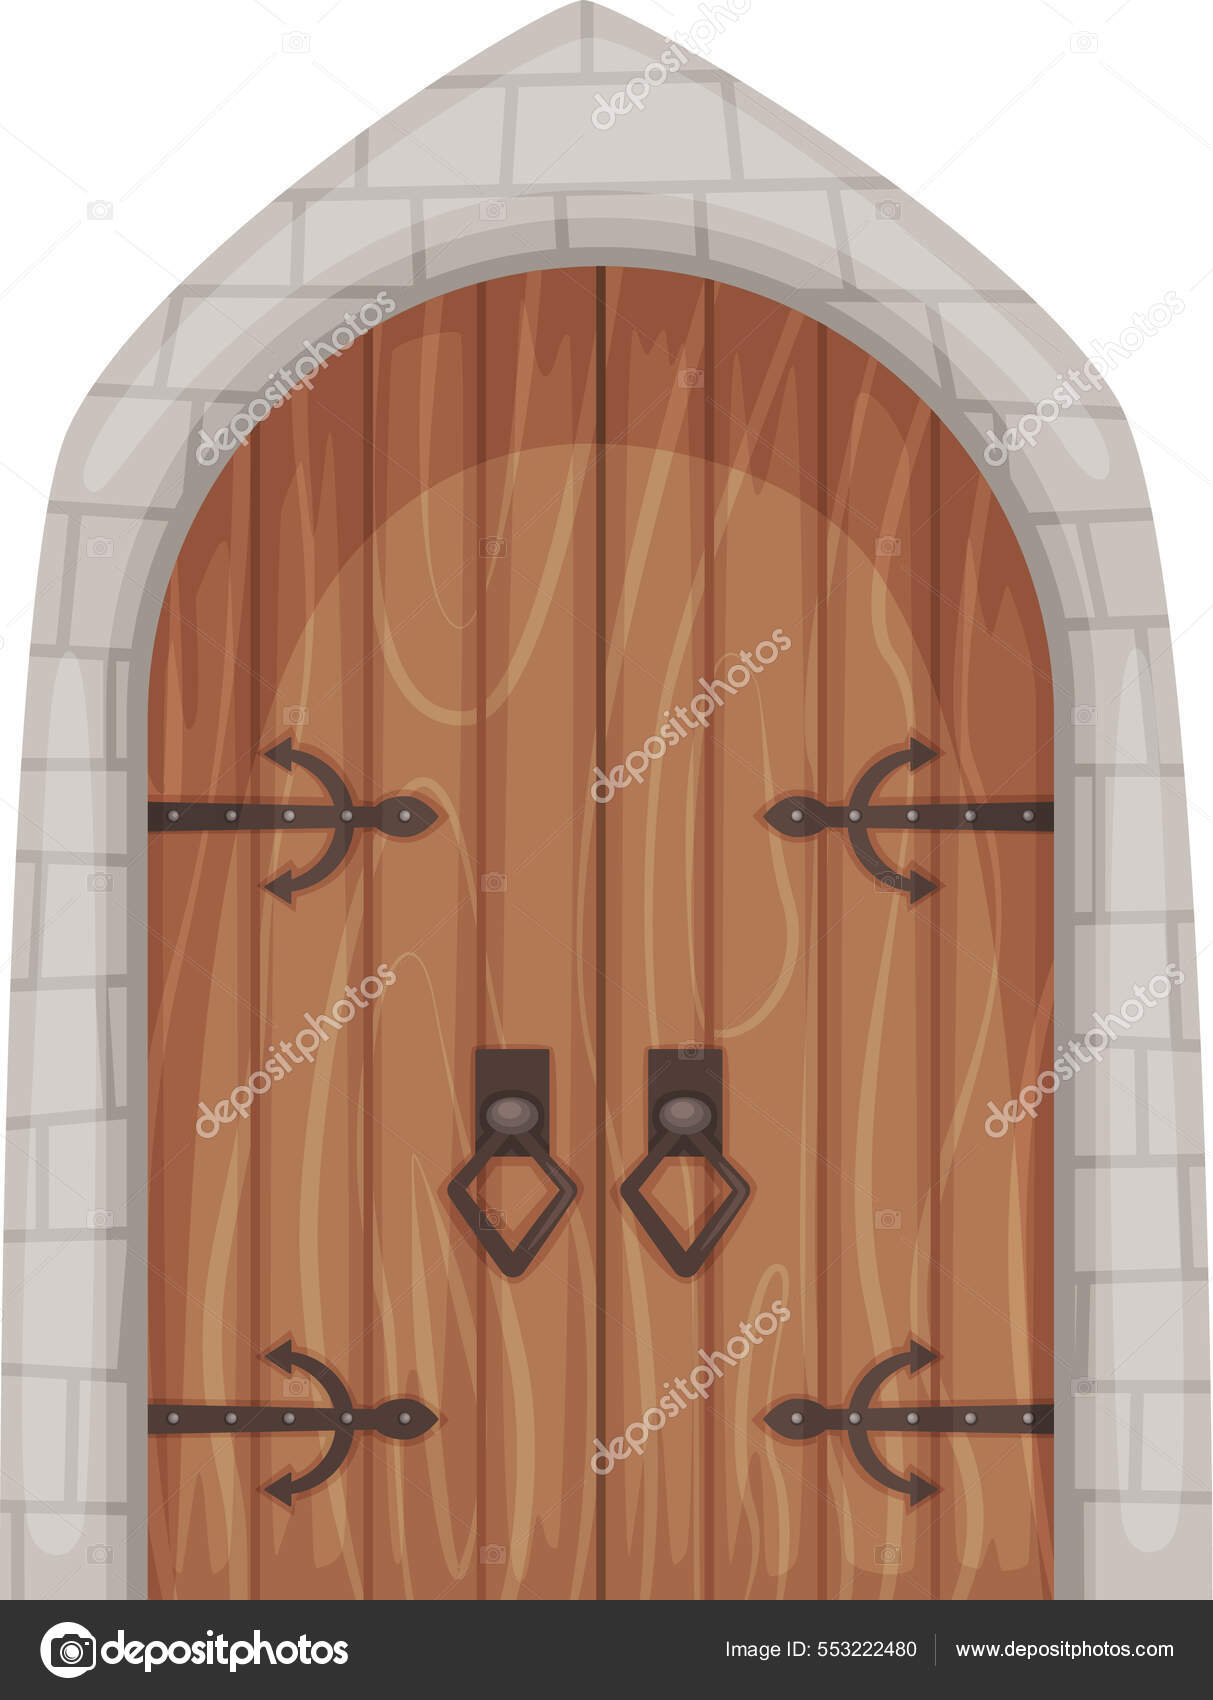 Cartoon mittelalterliche Burgeingangstore und Dungeon-Tür. Alte Holztüren  mit Steinumrandung, alte Burgen Tor- oder Torvektorset Stock-Vektorgrafik  von ©vatruska 553222480